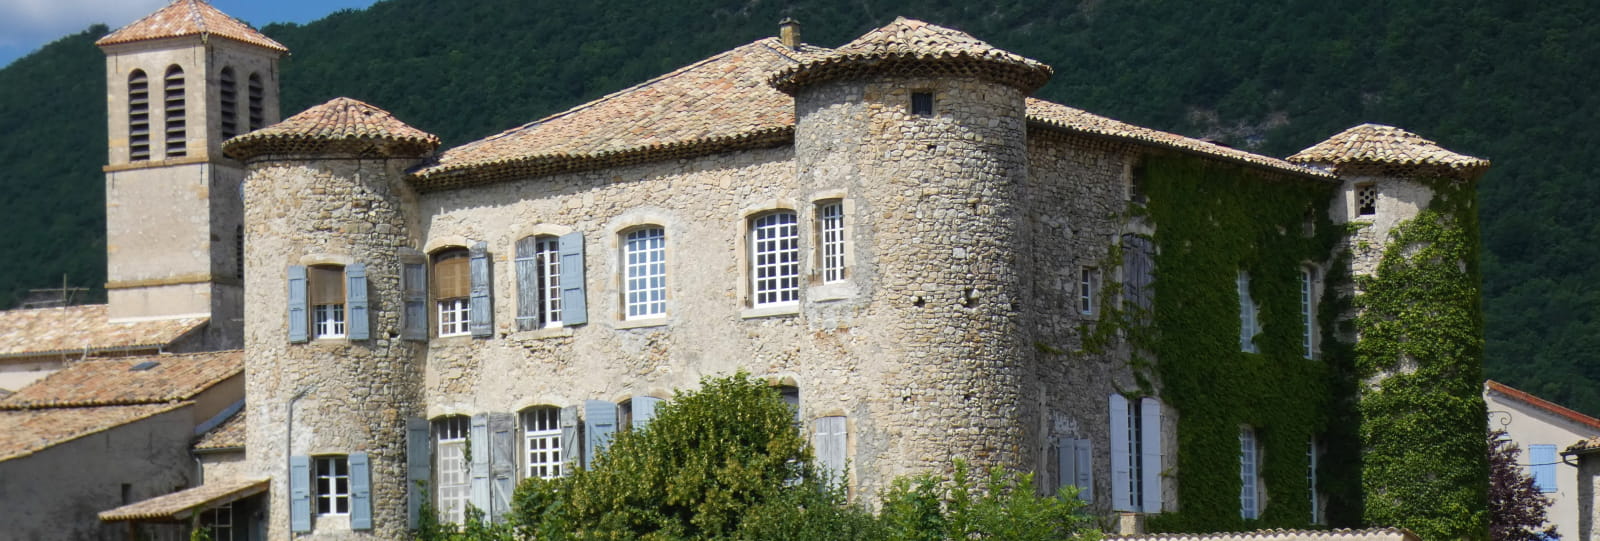 Château de Lachau